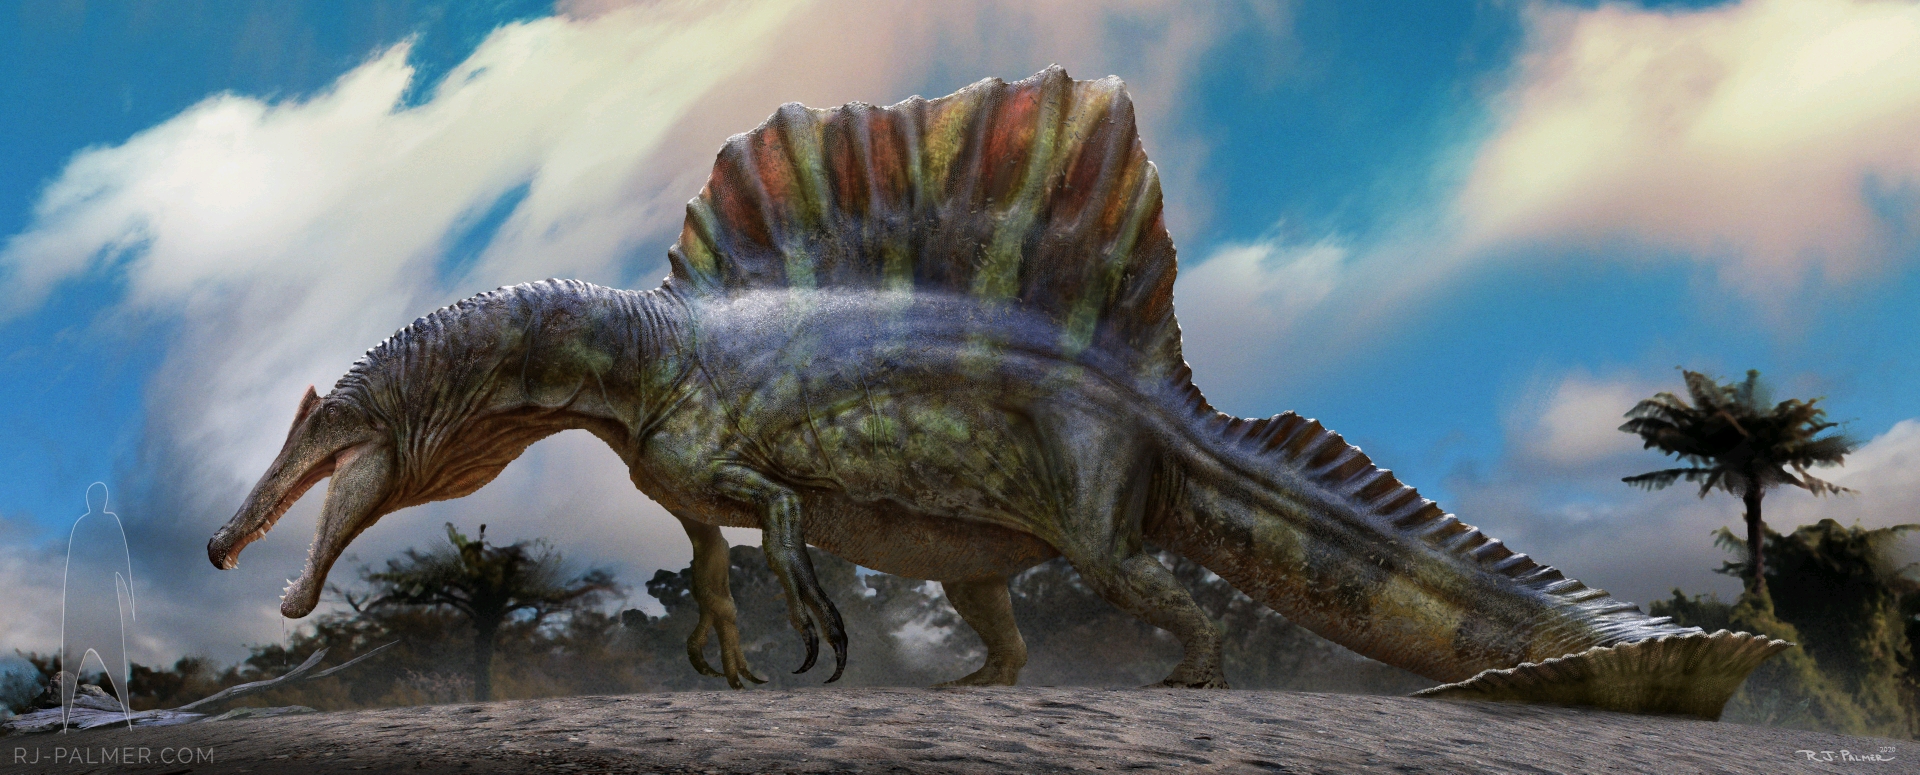 肉食传,兽脚类恐龙的传奇—石破天惊